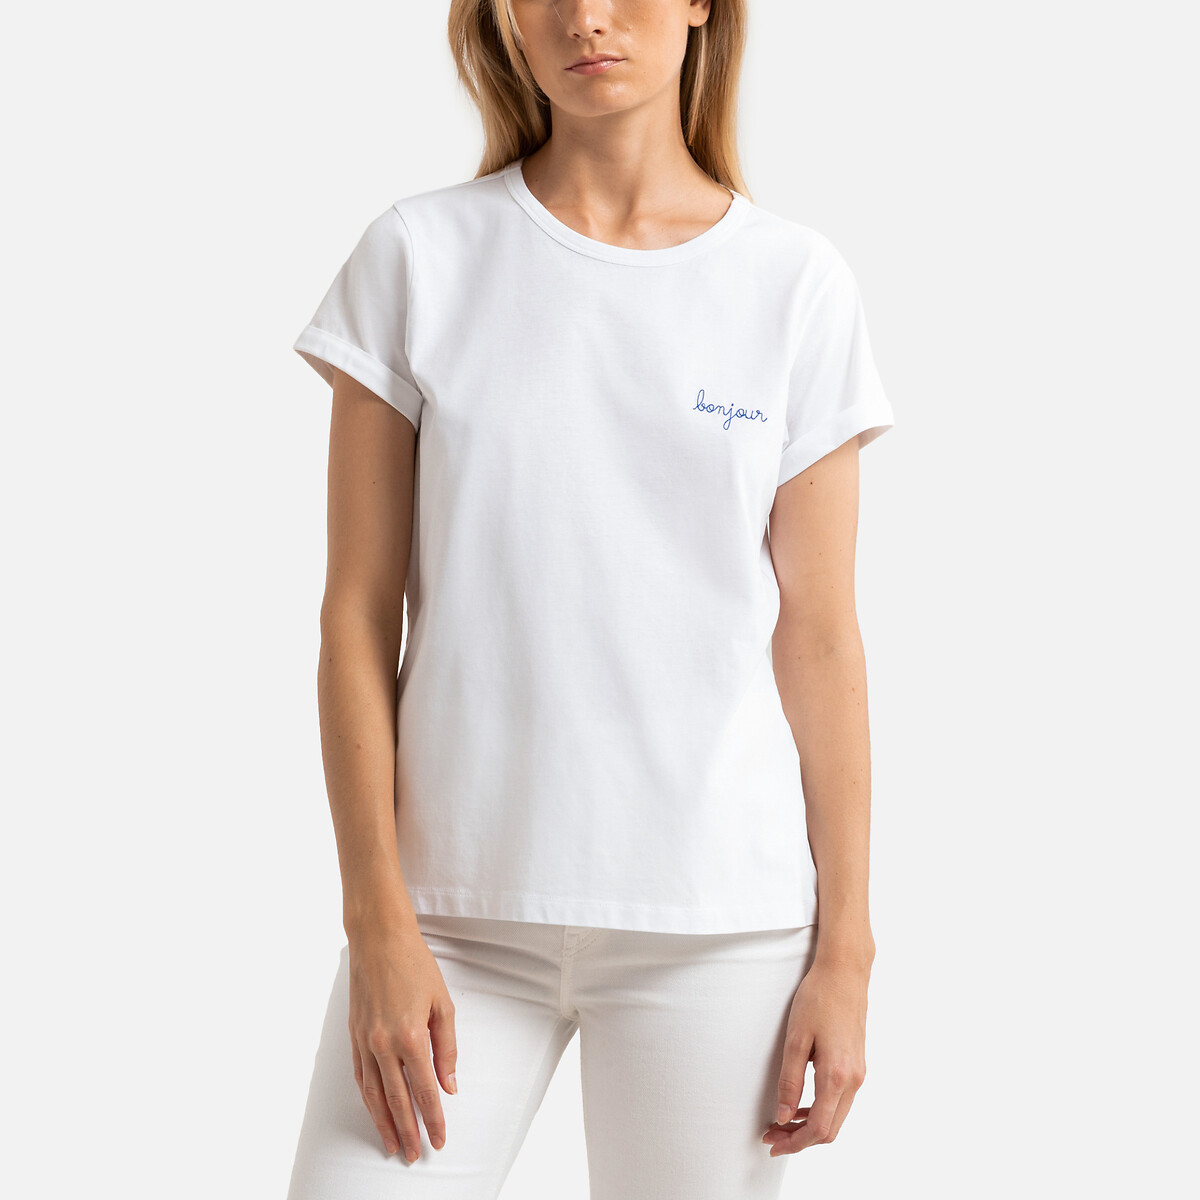 Kurzärmeliges T-Shirt aus Baumwolle POITOU BONJOUR von MAISON LABICHE